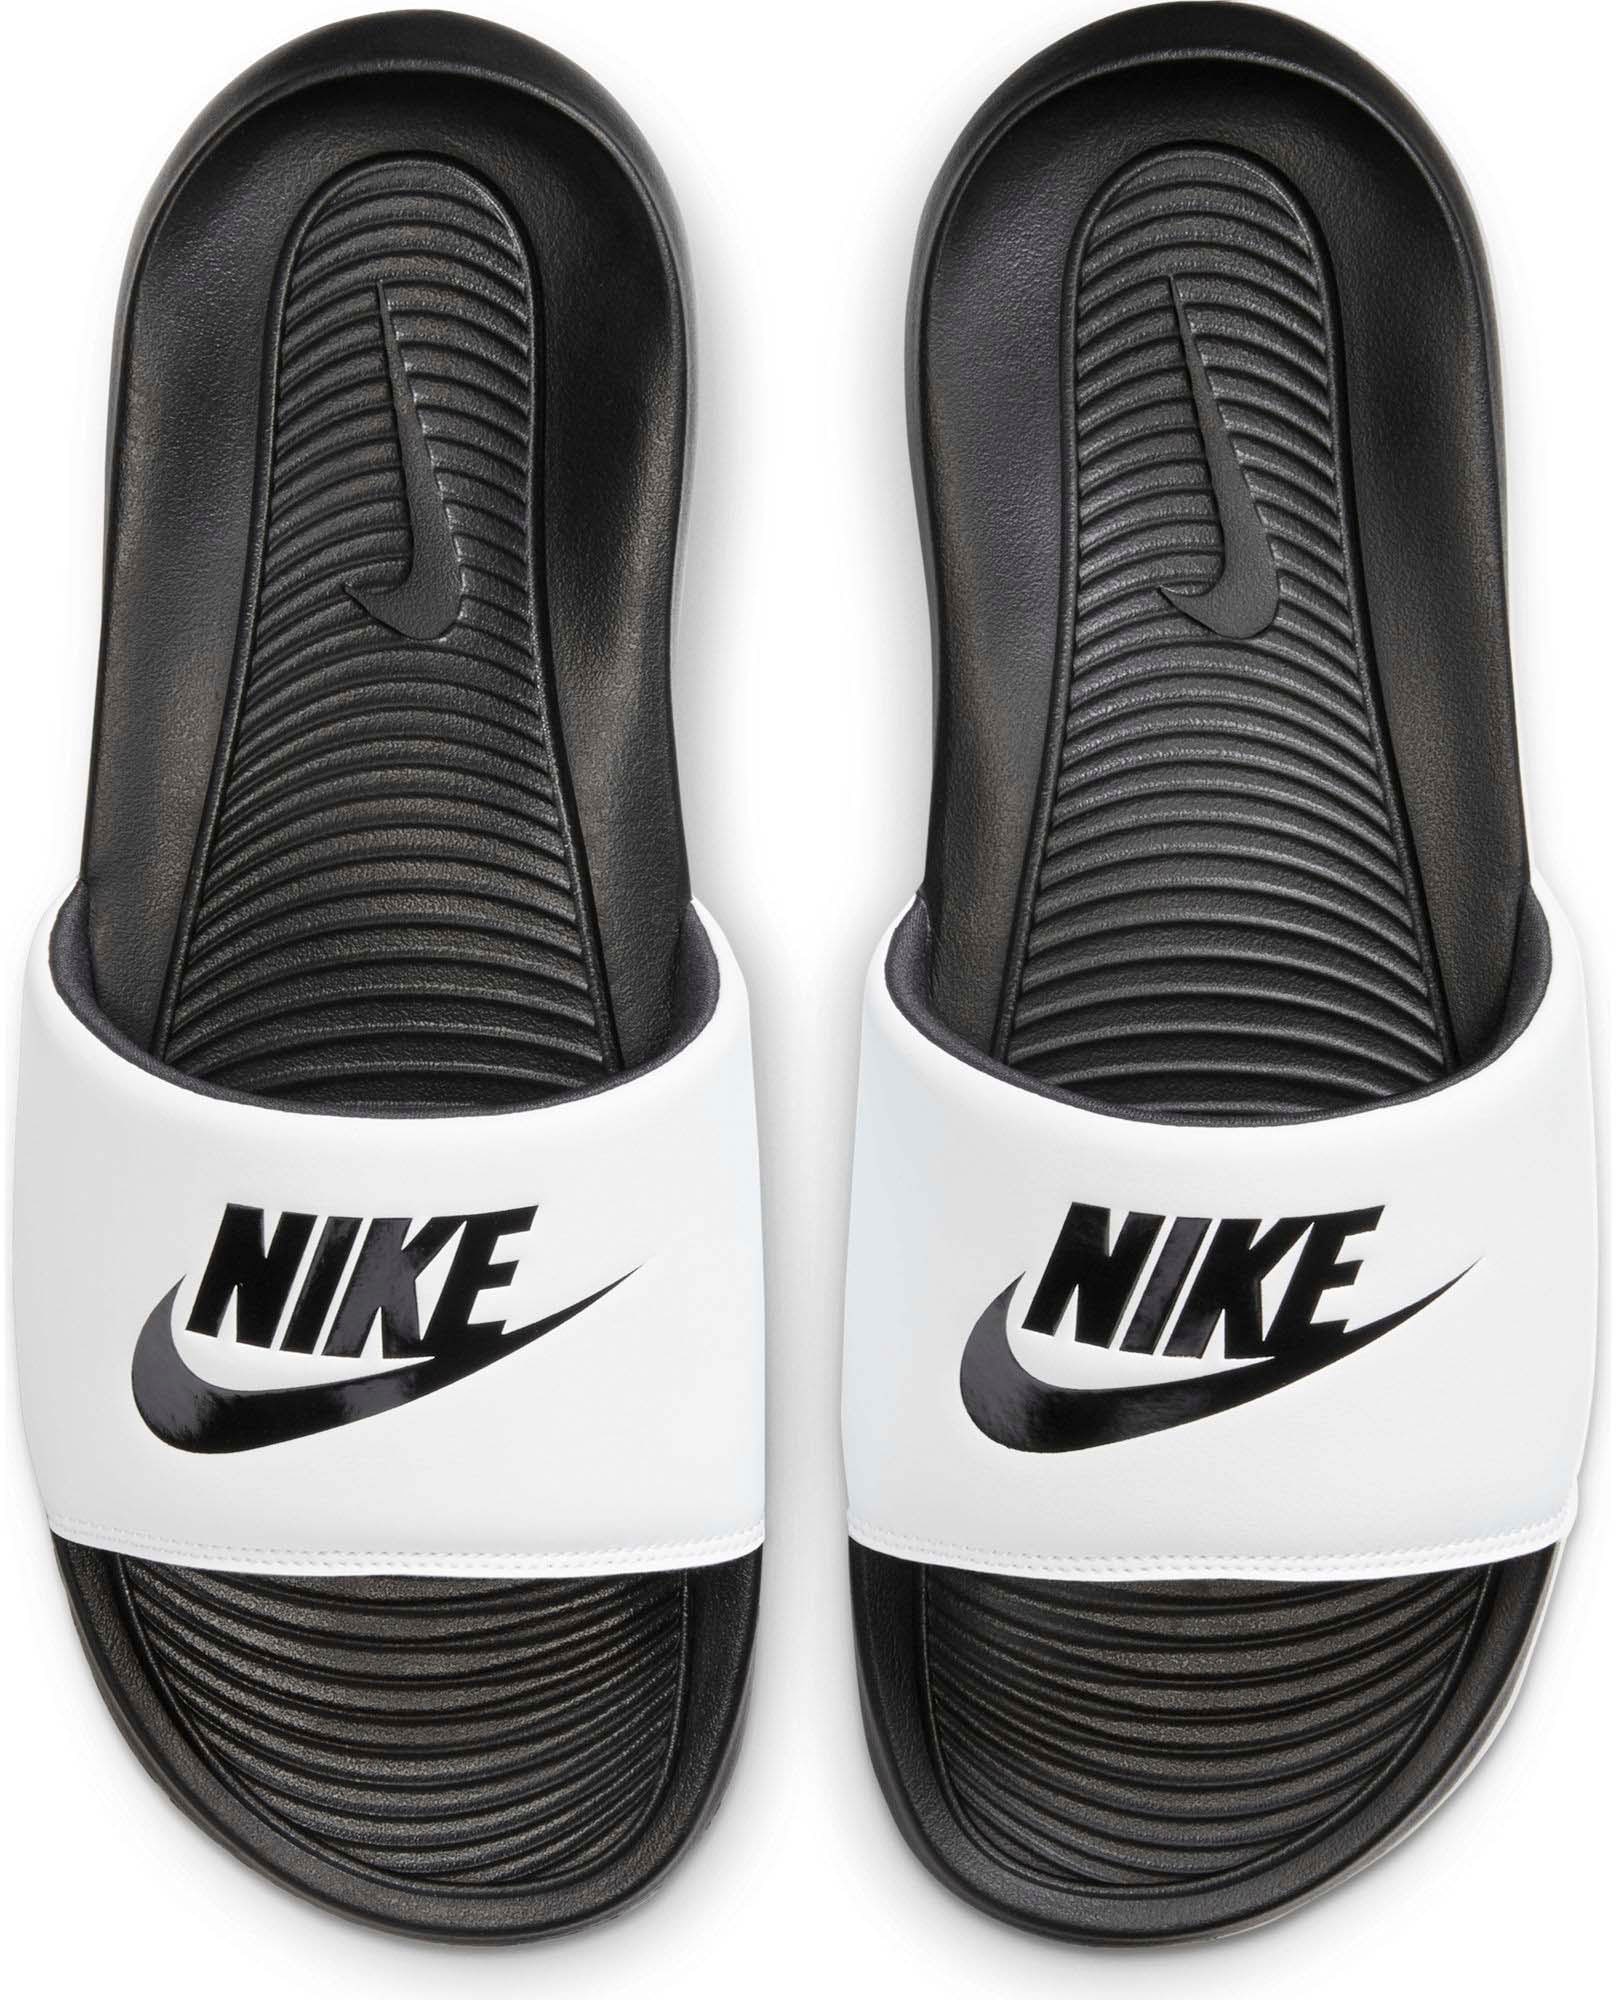 SLIDE« für Badesandale ONE »VICTORI Sportswear Männer Nike